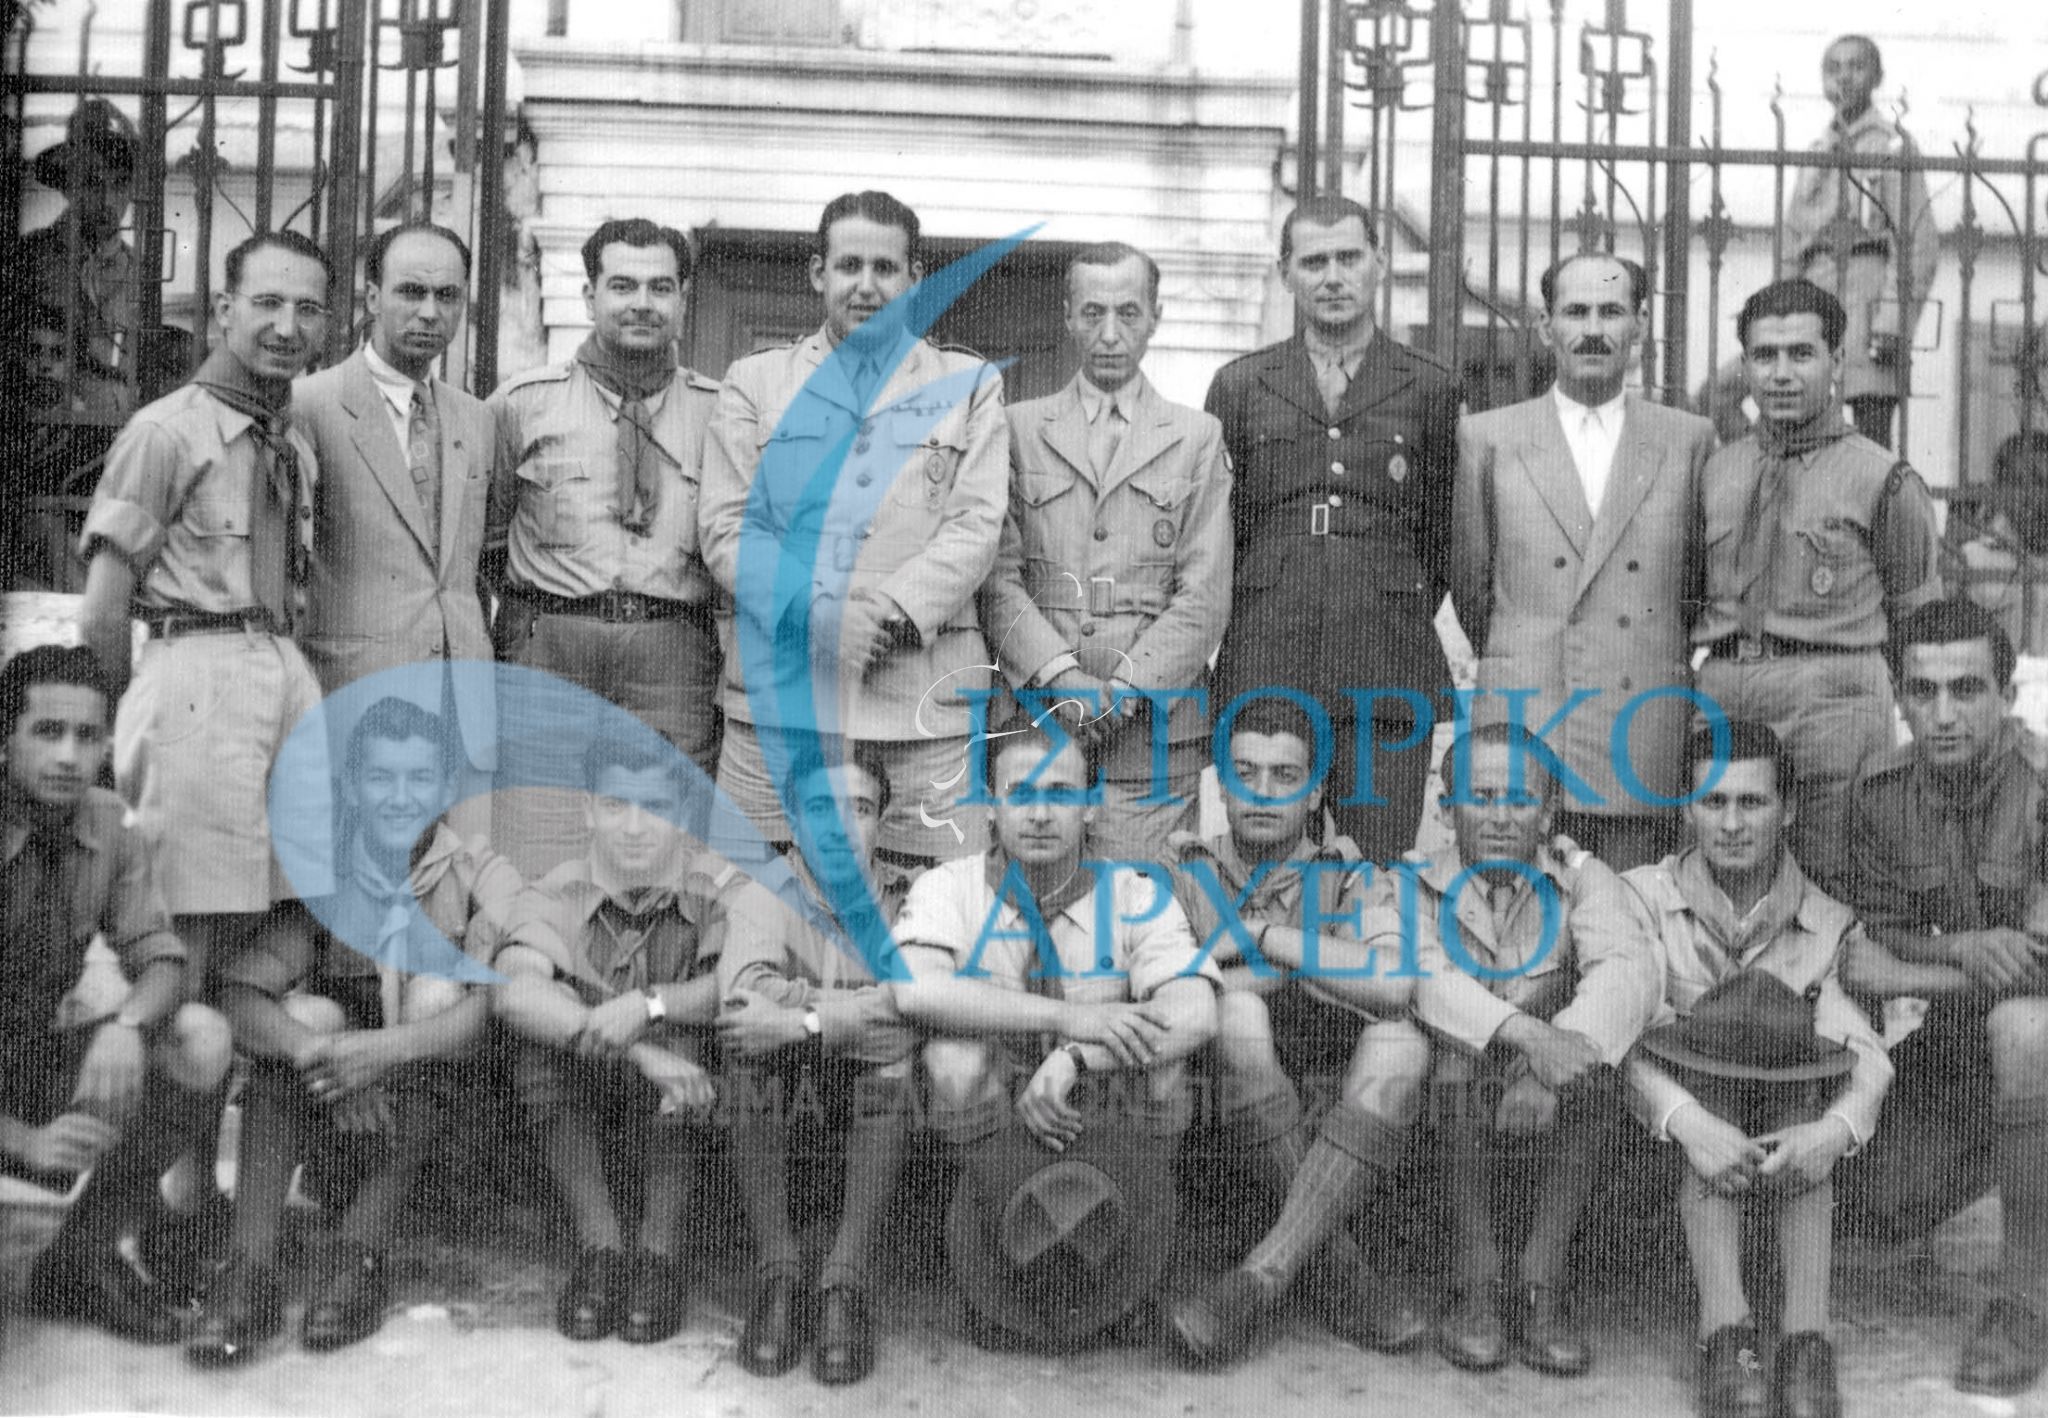 Ο Γενικός Έφορος Δ. Αλεξάτος και και ο Γεν. Γραμματέας μαζί με τον Περιφερειακό Πασχαλίδη και τον έφορο Λίβαν και άλλους  βαθμοφόρους της Ξάνθης κατά την επίσκεψή του Γ.Ε> στην πόλη τον Ιούλιο του 1948.